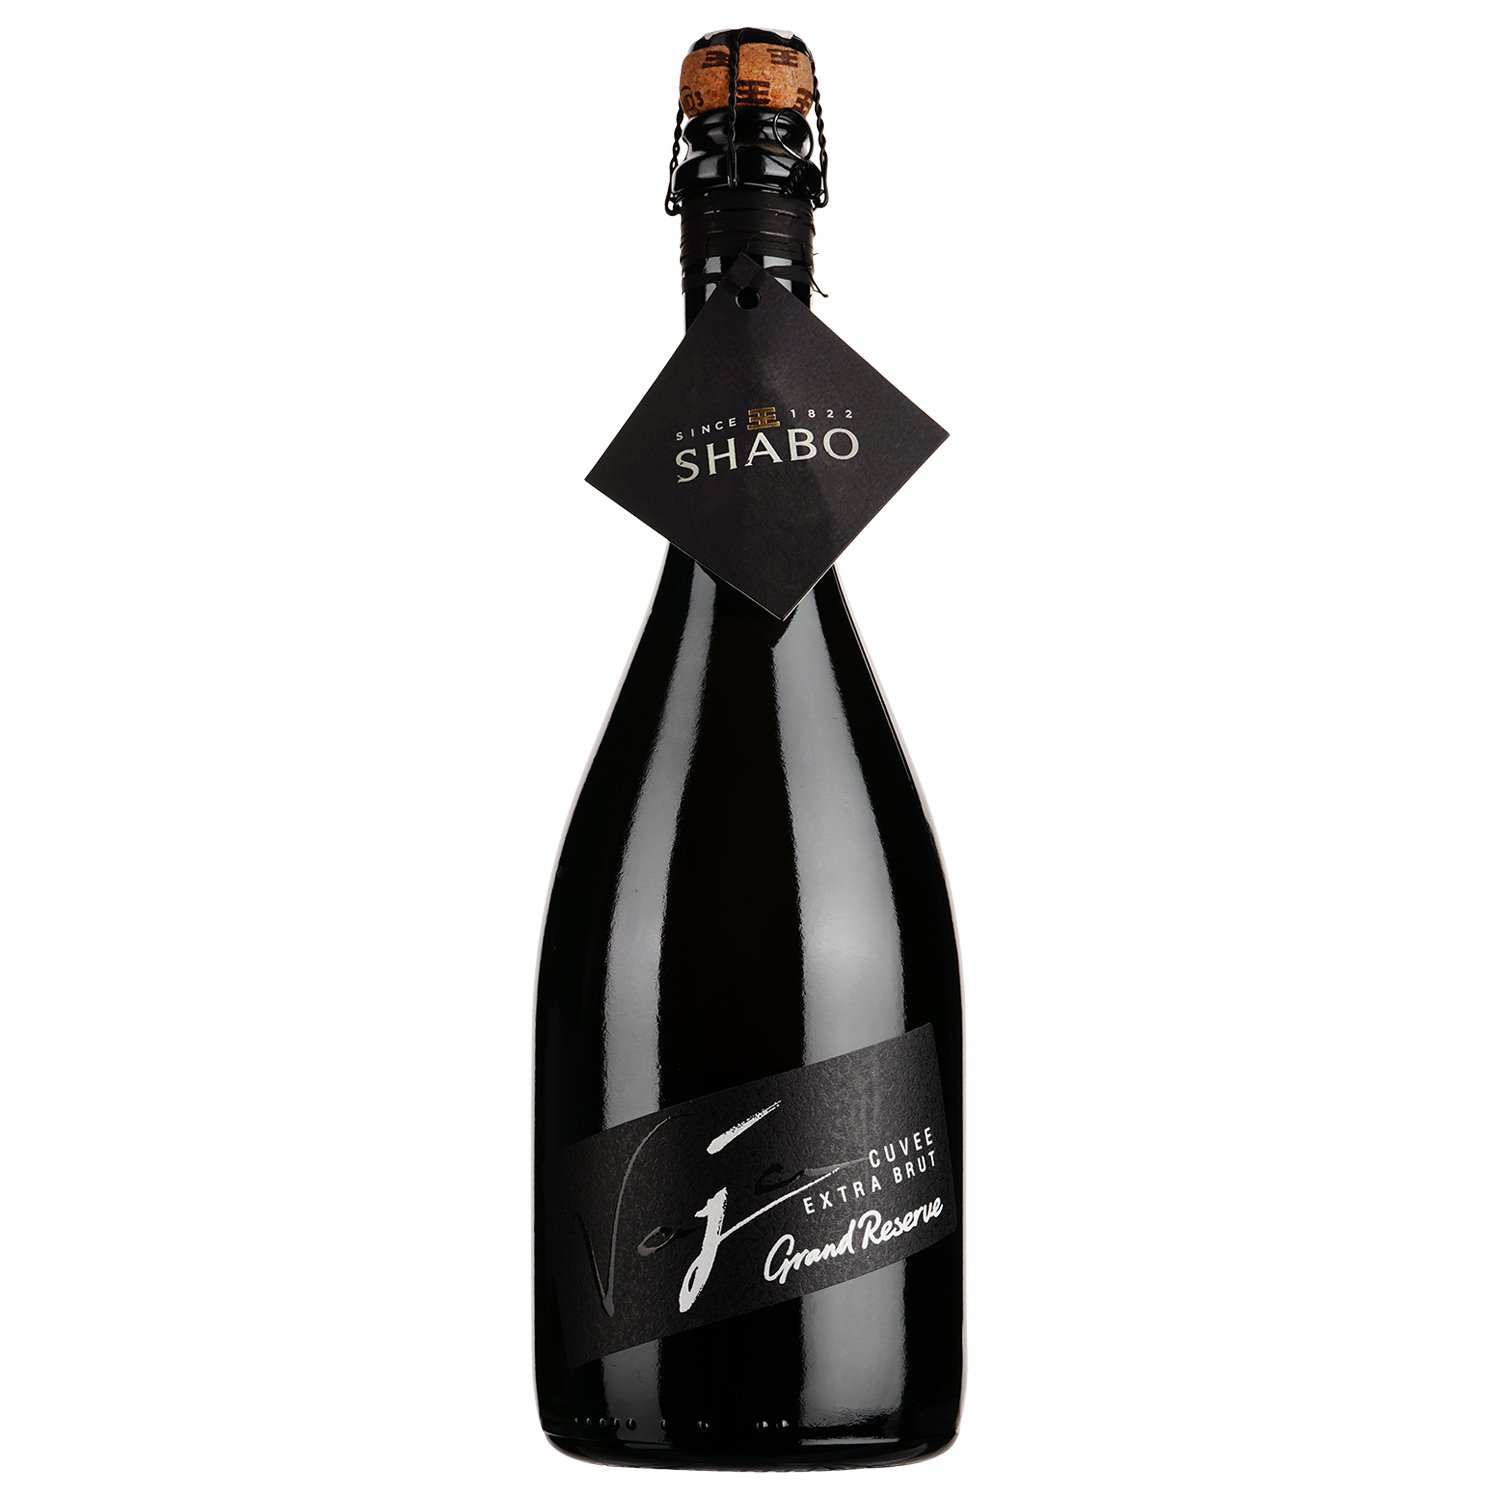 Ігристе вино Shabo Grand Reserve Classic, екстра брют, біле, 13%, 0,75 л - фото 1